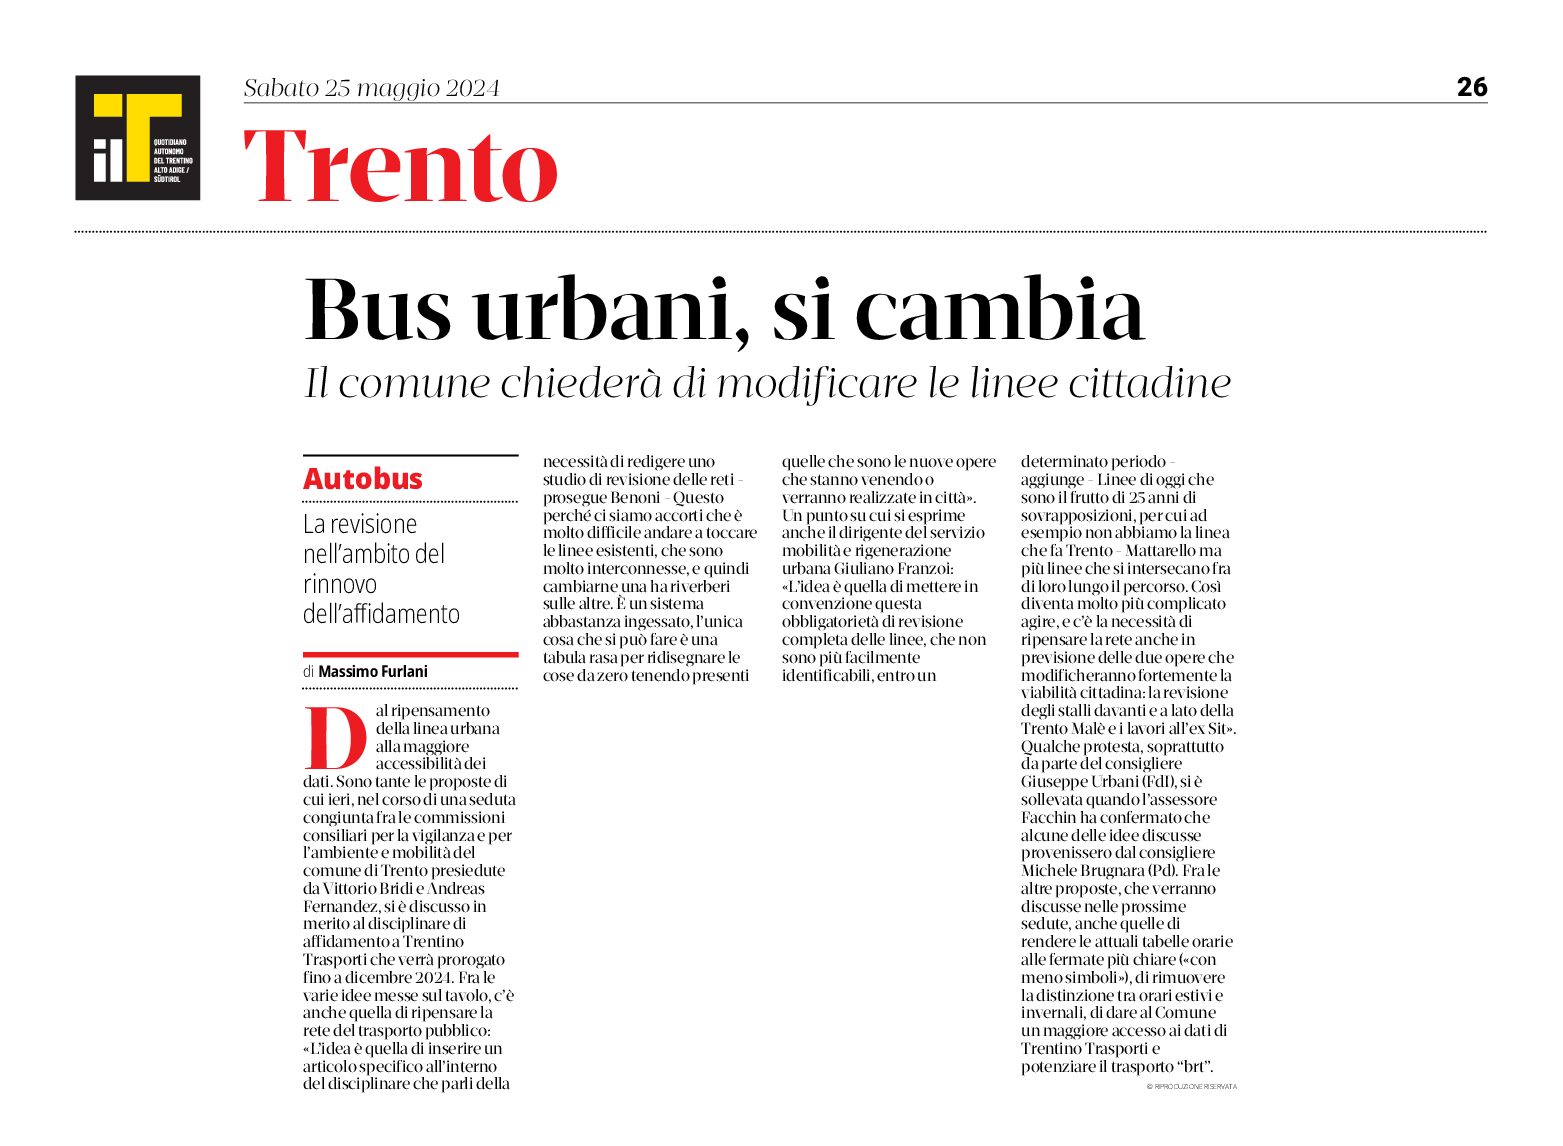 Trento: bus urbani, si cambia